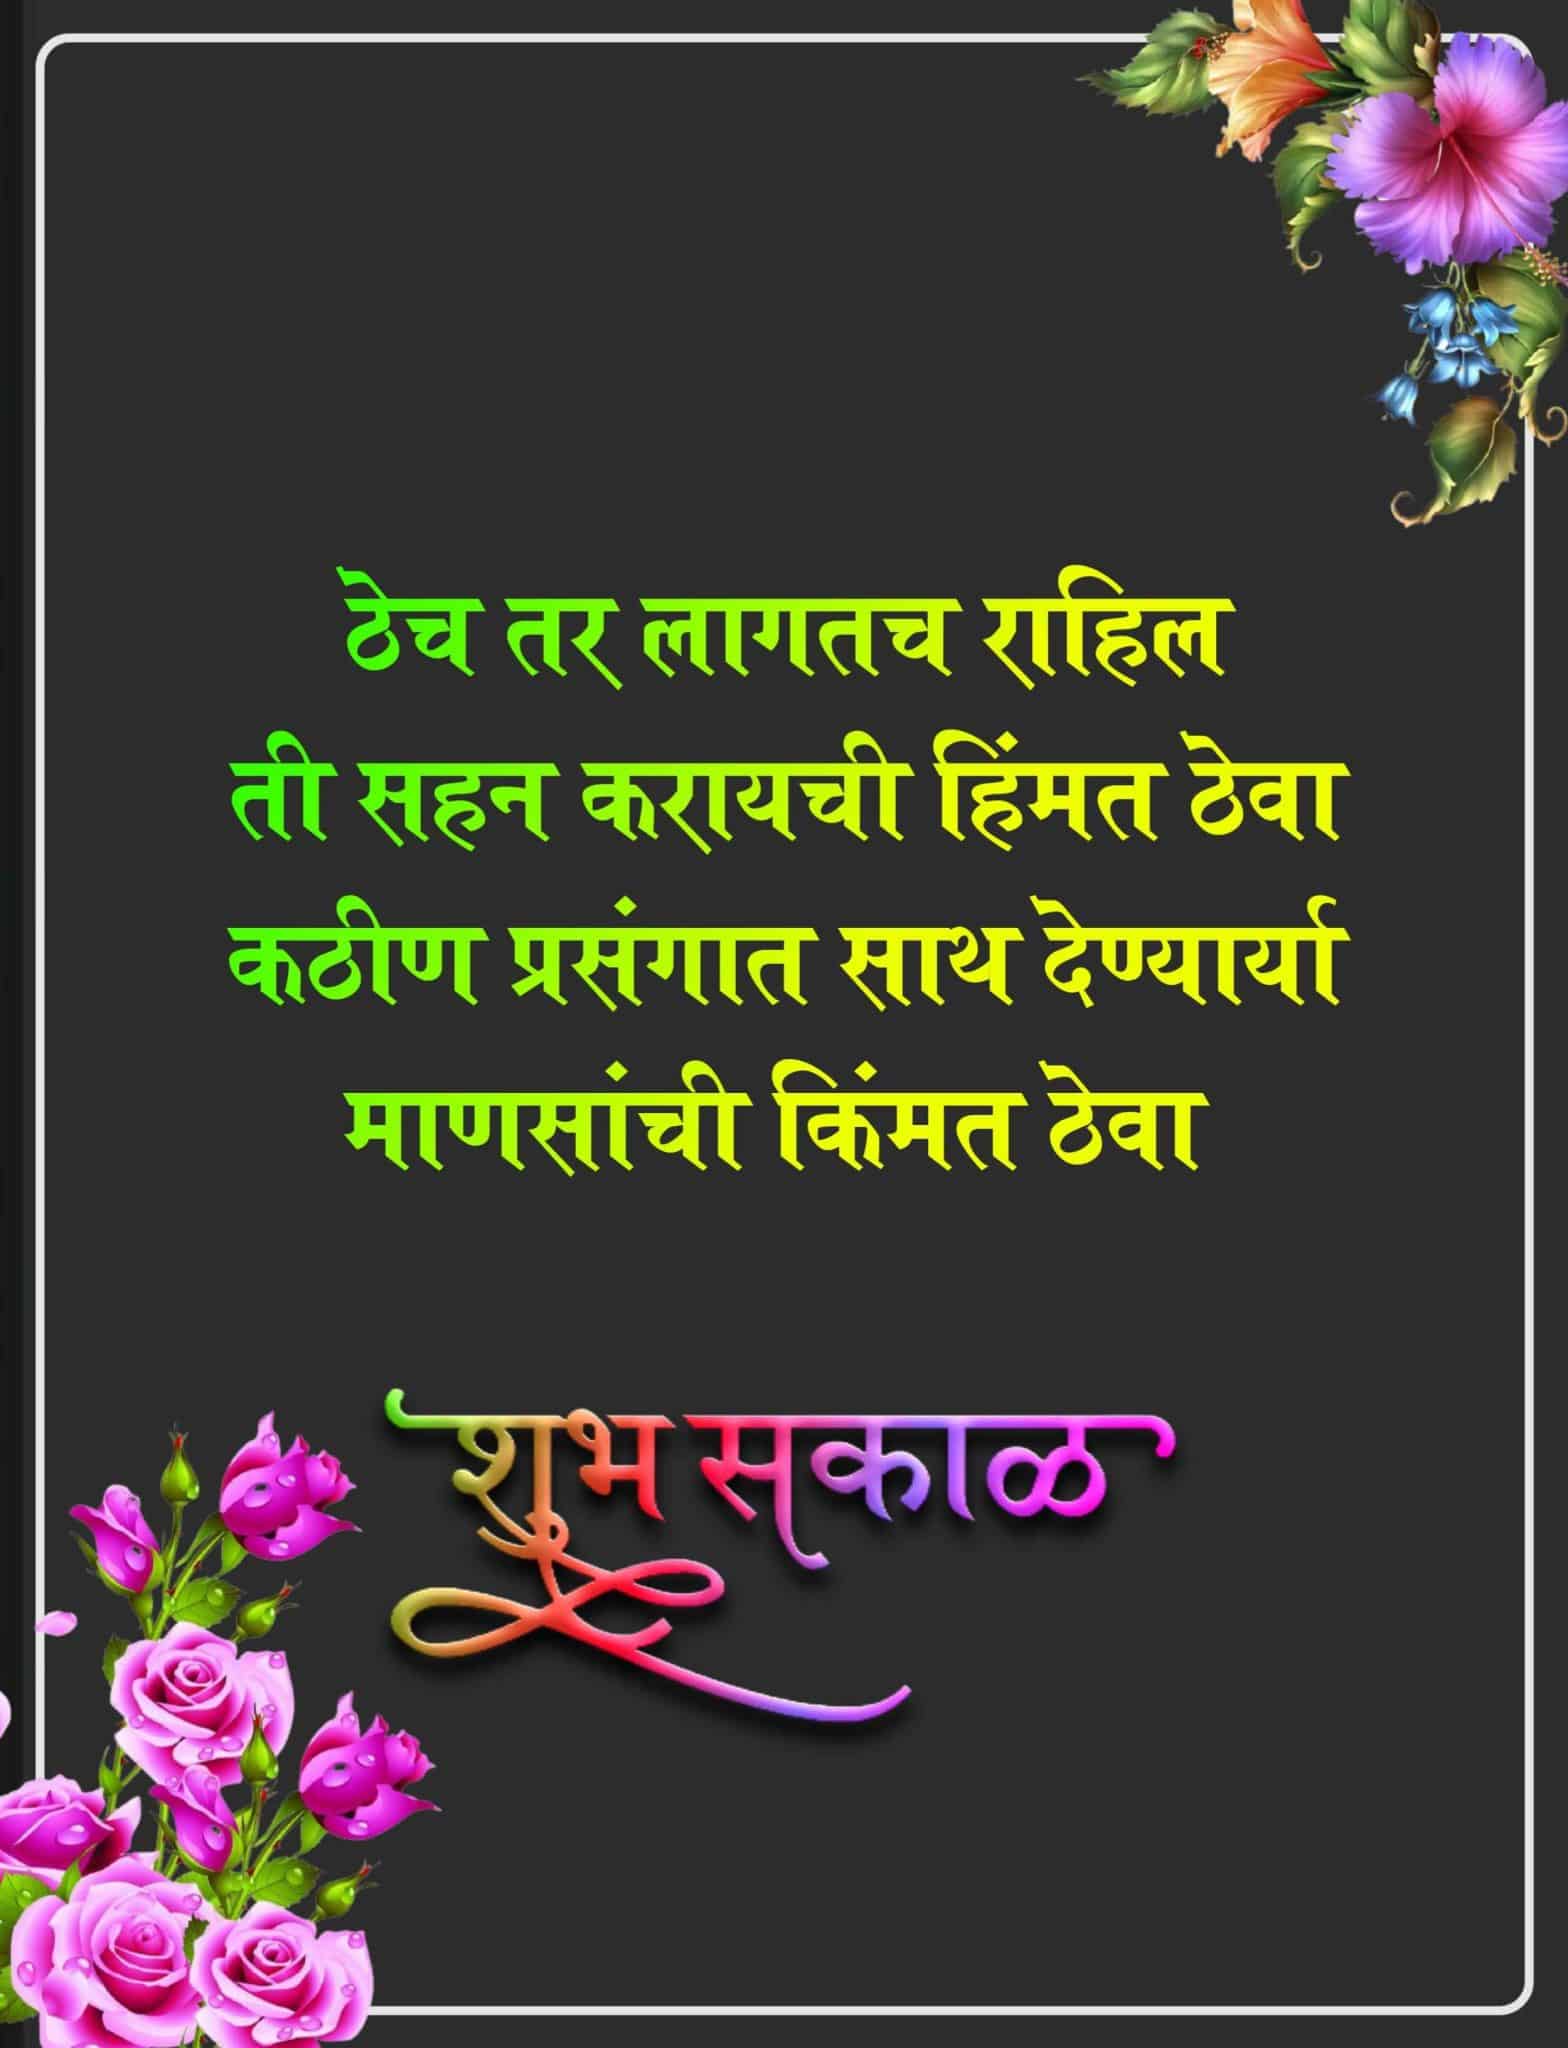 Good Morning Marathi Quotes For Friends, Maitri Good Morning Images Marathi